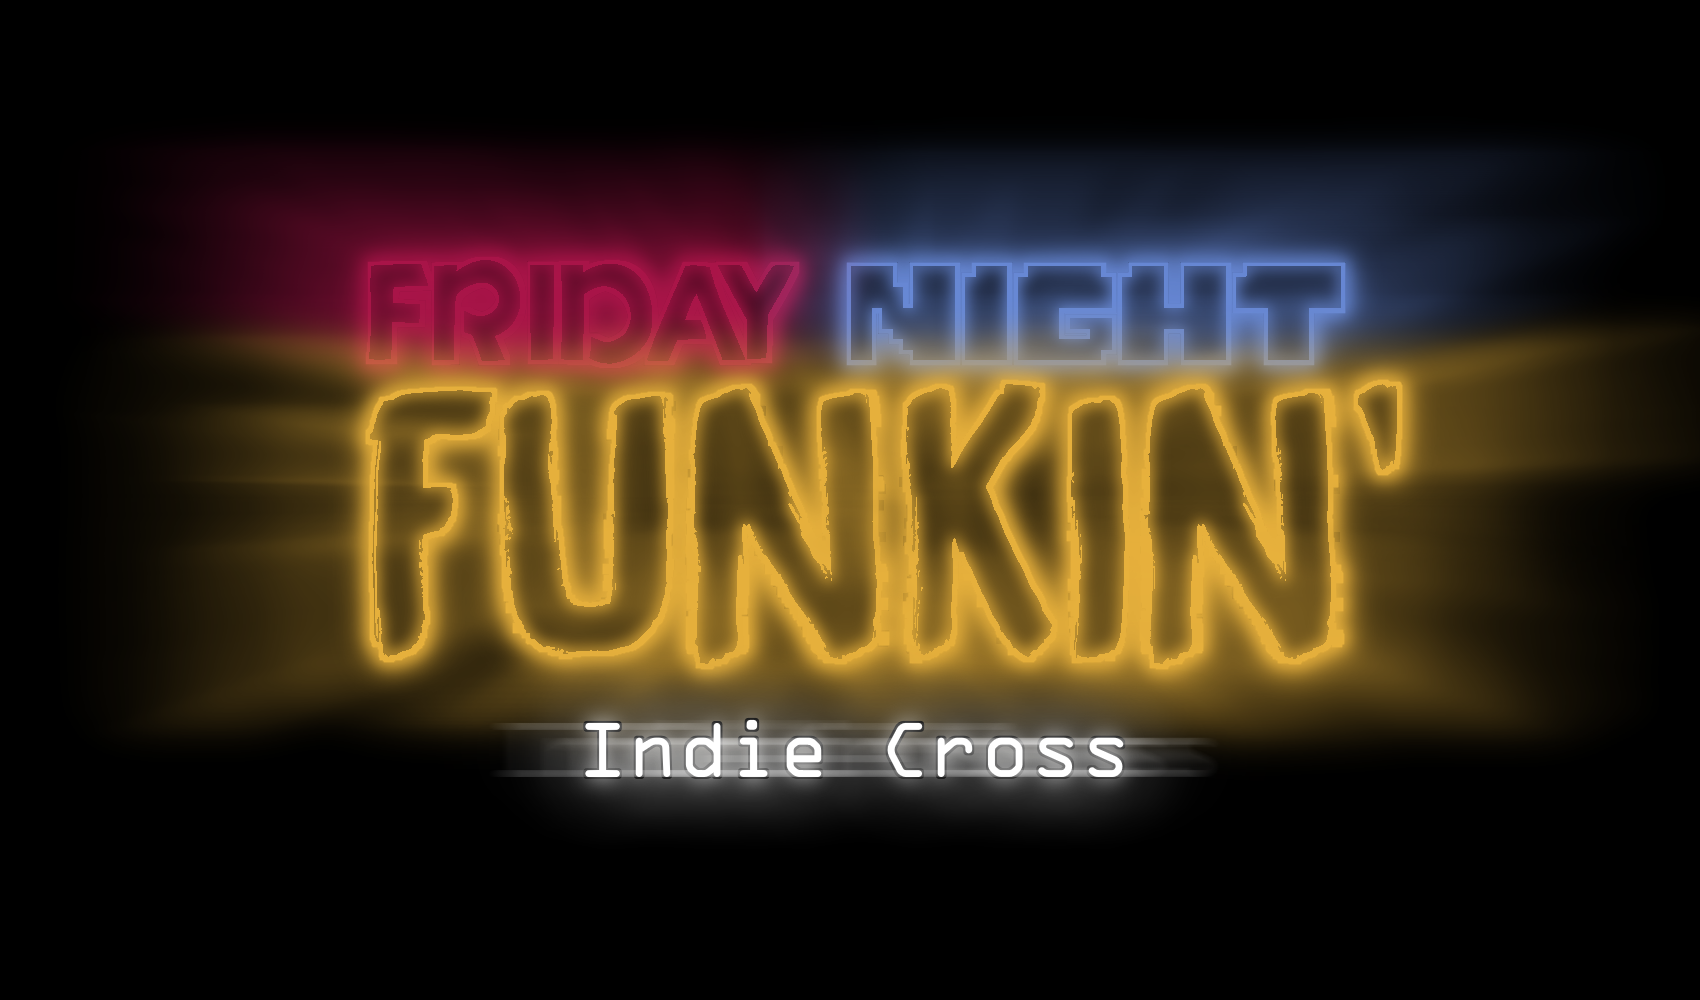 FNF VS indie cross bendy week FNF HD BF by FunTimeChell on DeviantArt